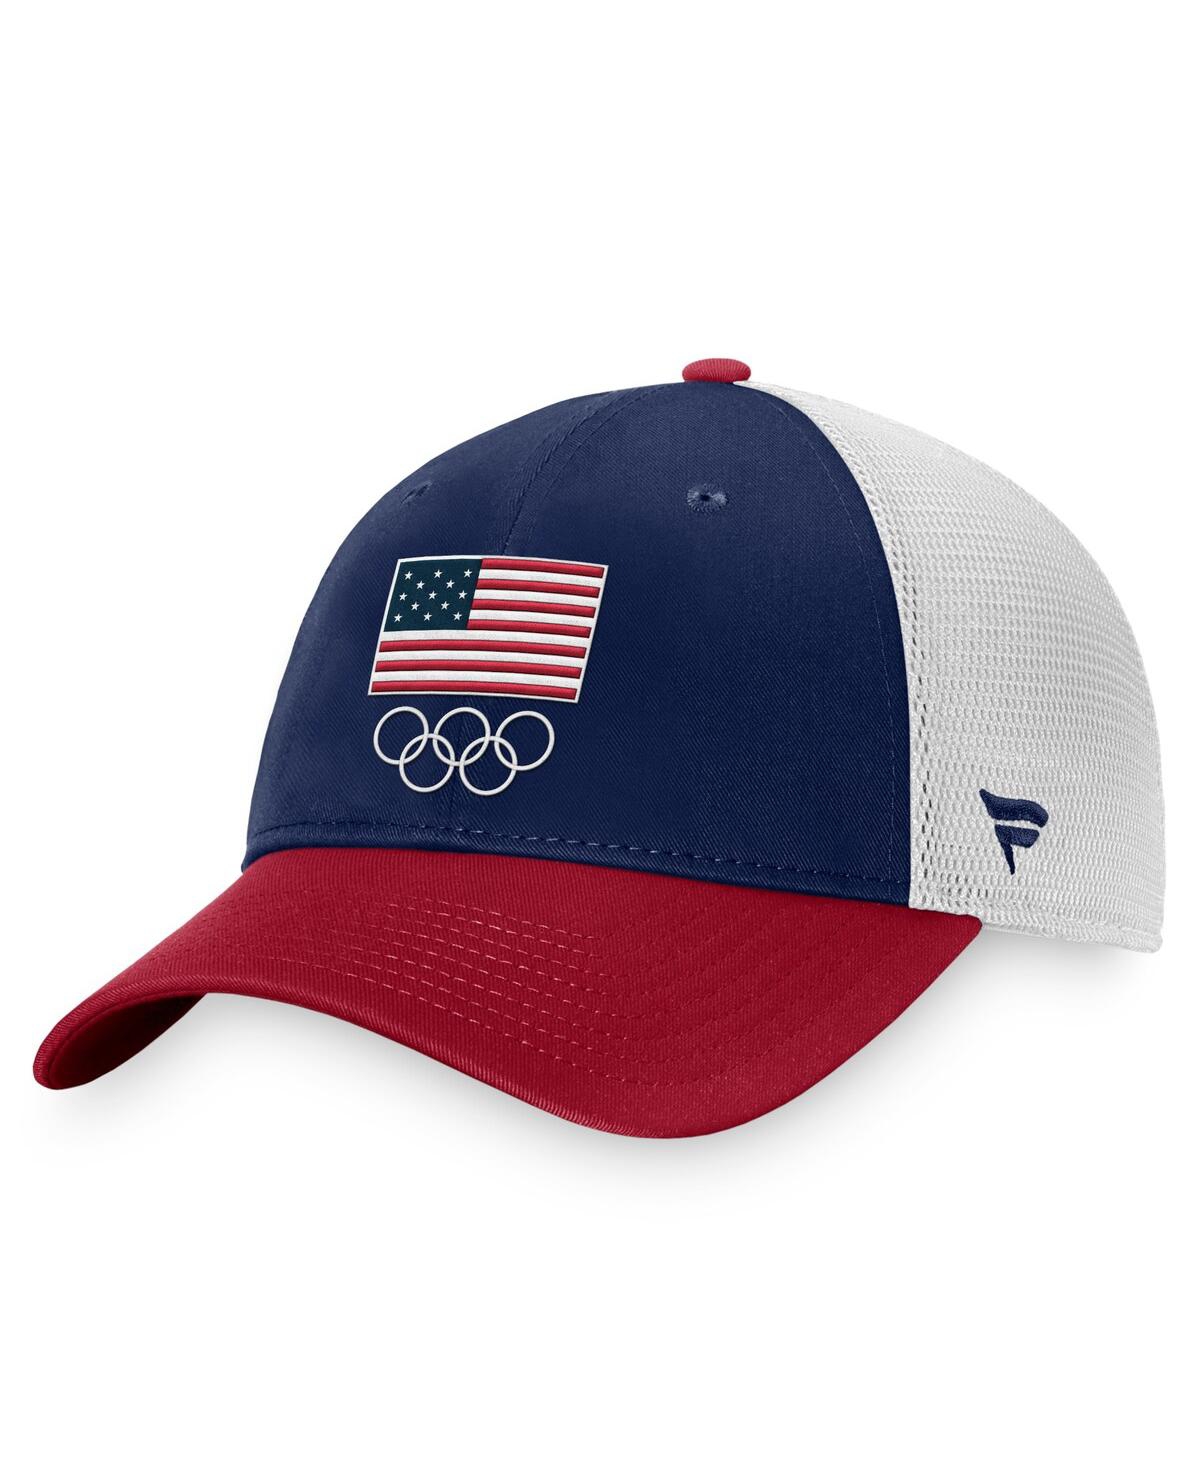 Fanatics Men's  Navy, White Team Usa Adjustable Hat In Navy,white